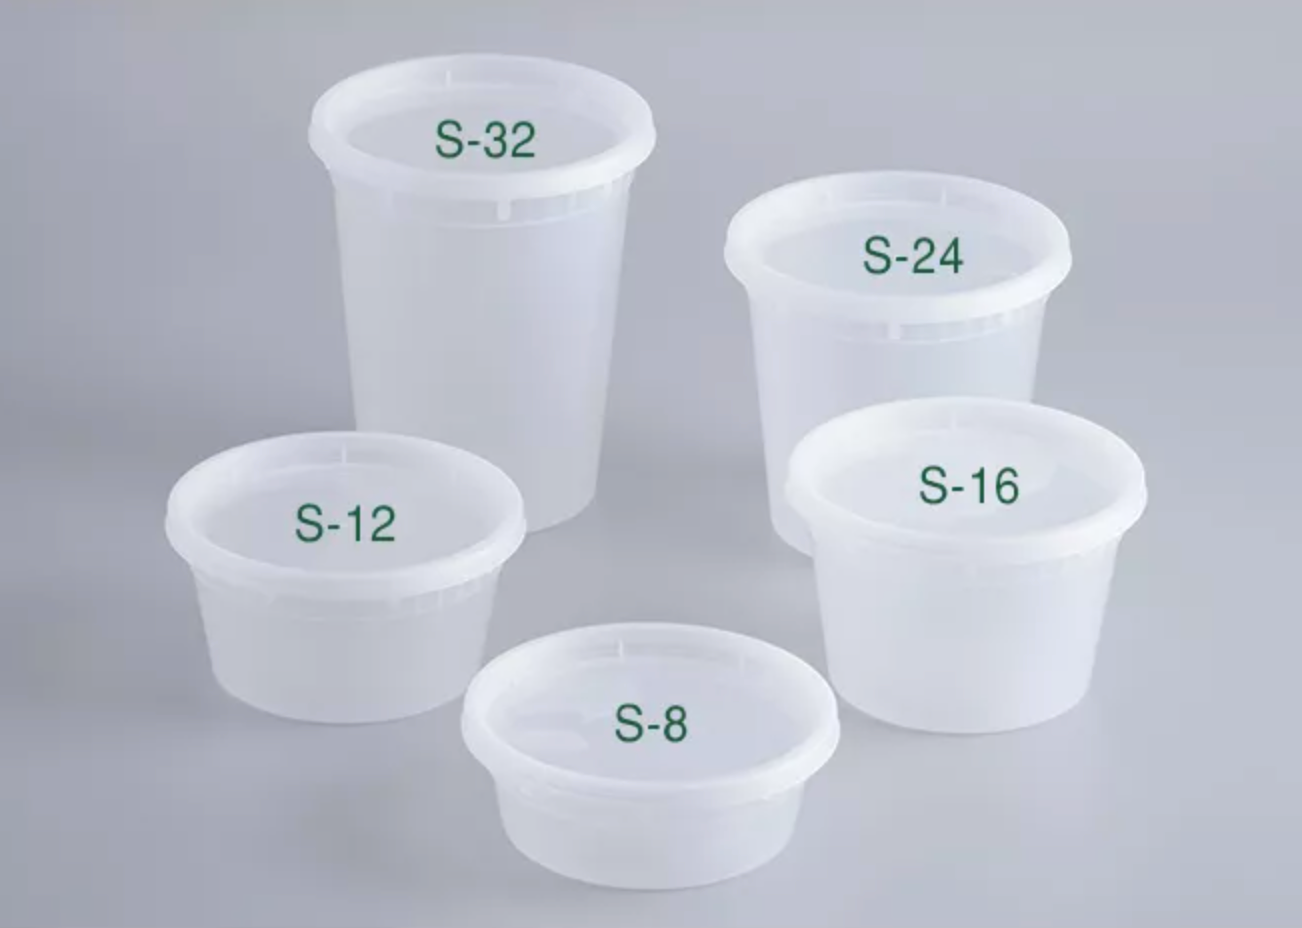 24 oz. Microwaveable Translucent Plastic Soup Container 240 Sets